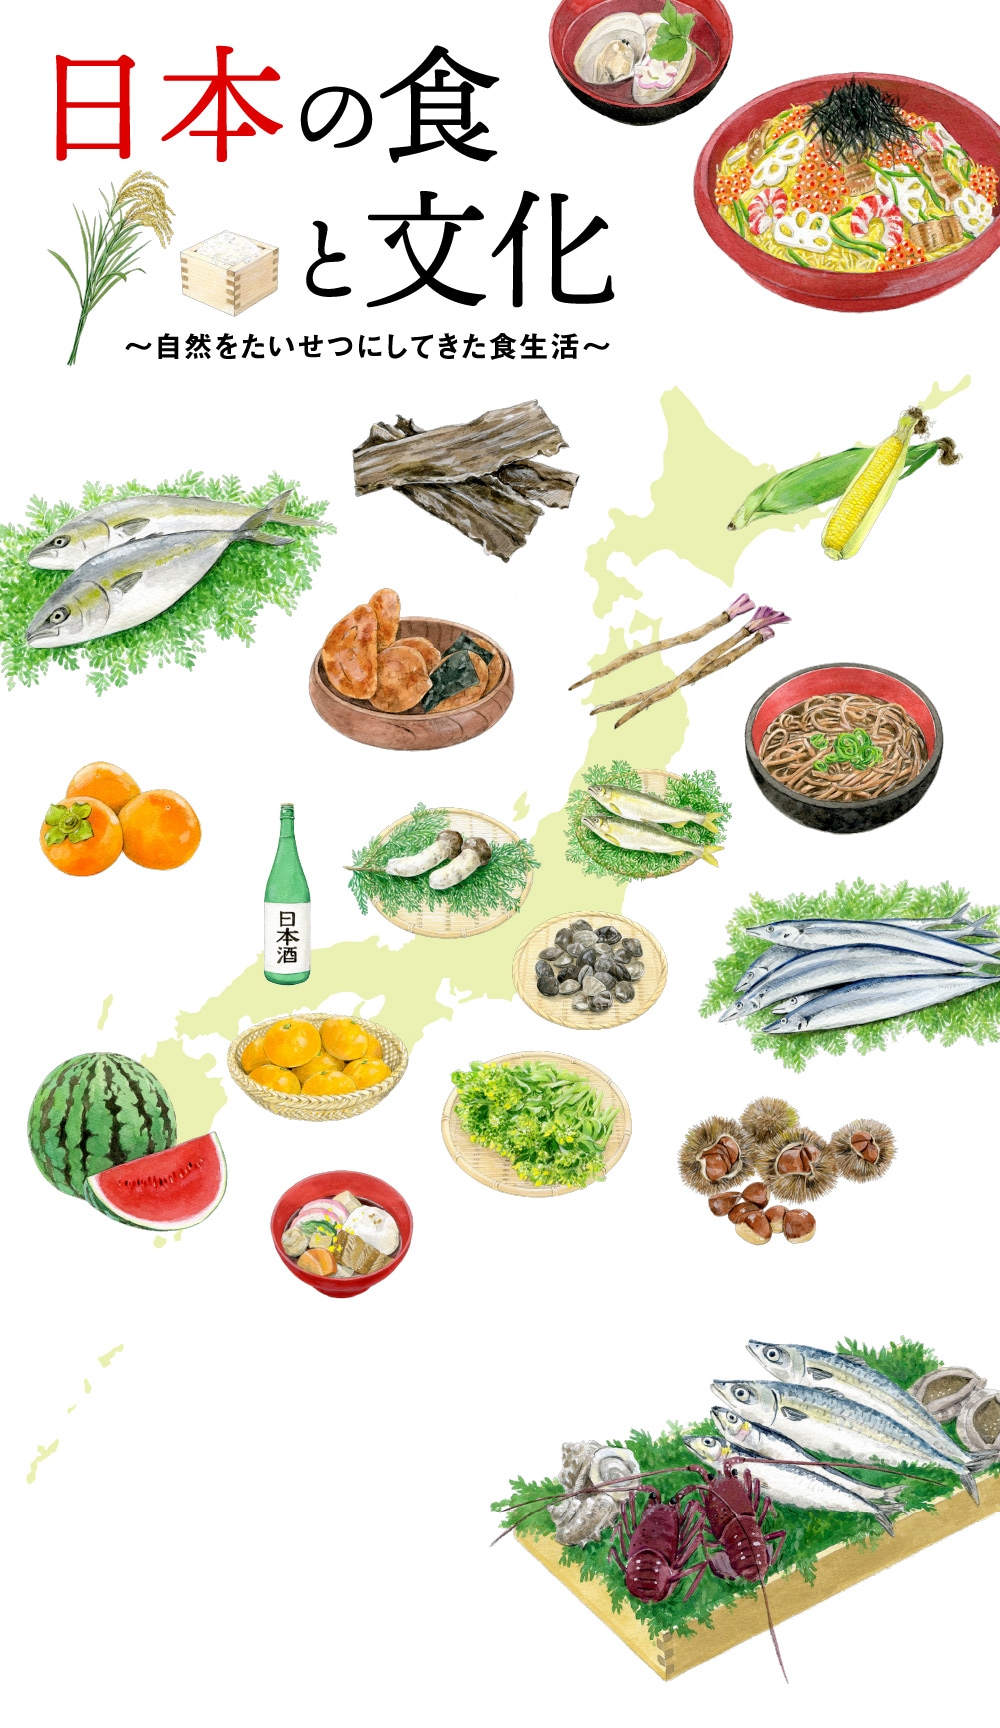 日本の食と文化〜自然をたいせつにしてきた食生活〜